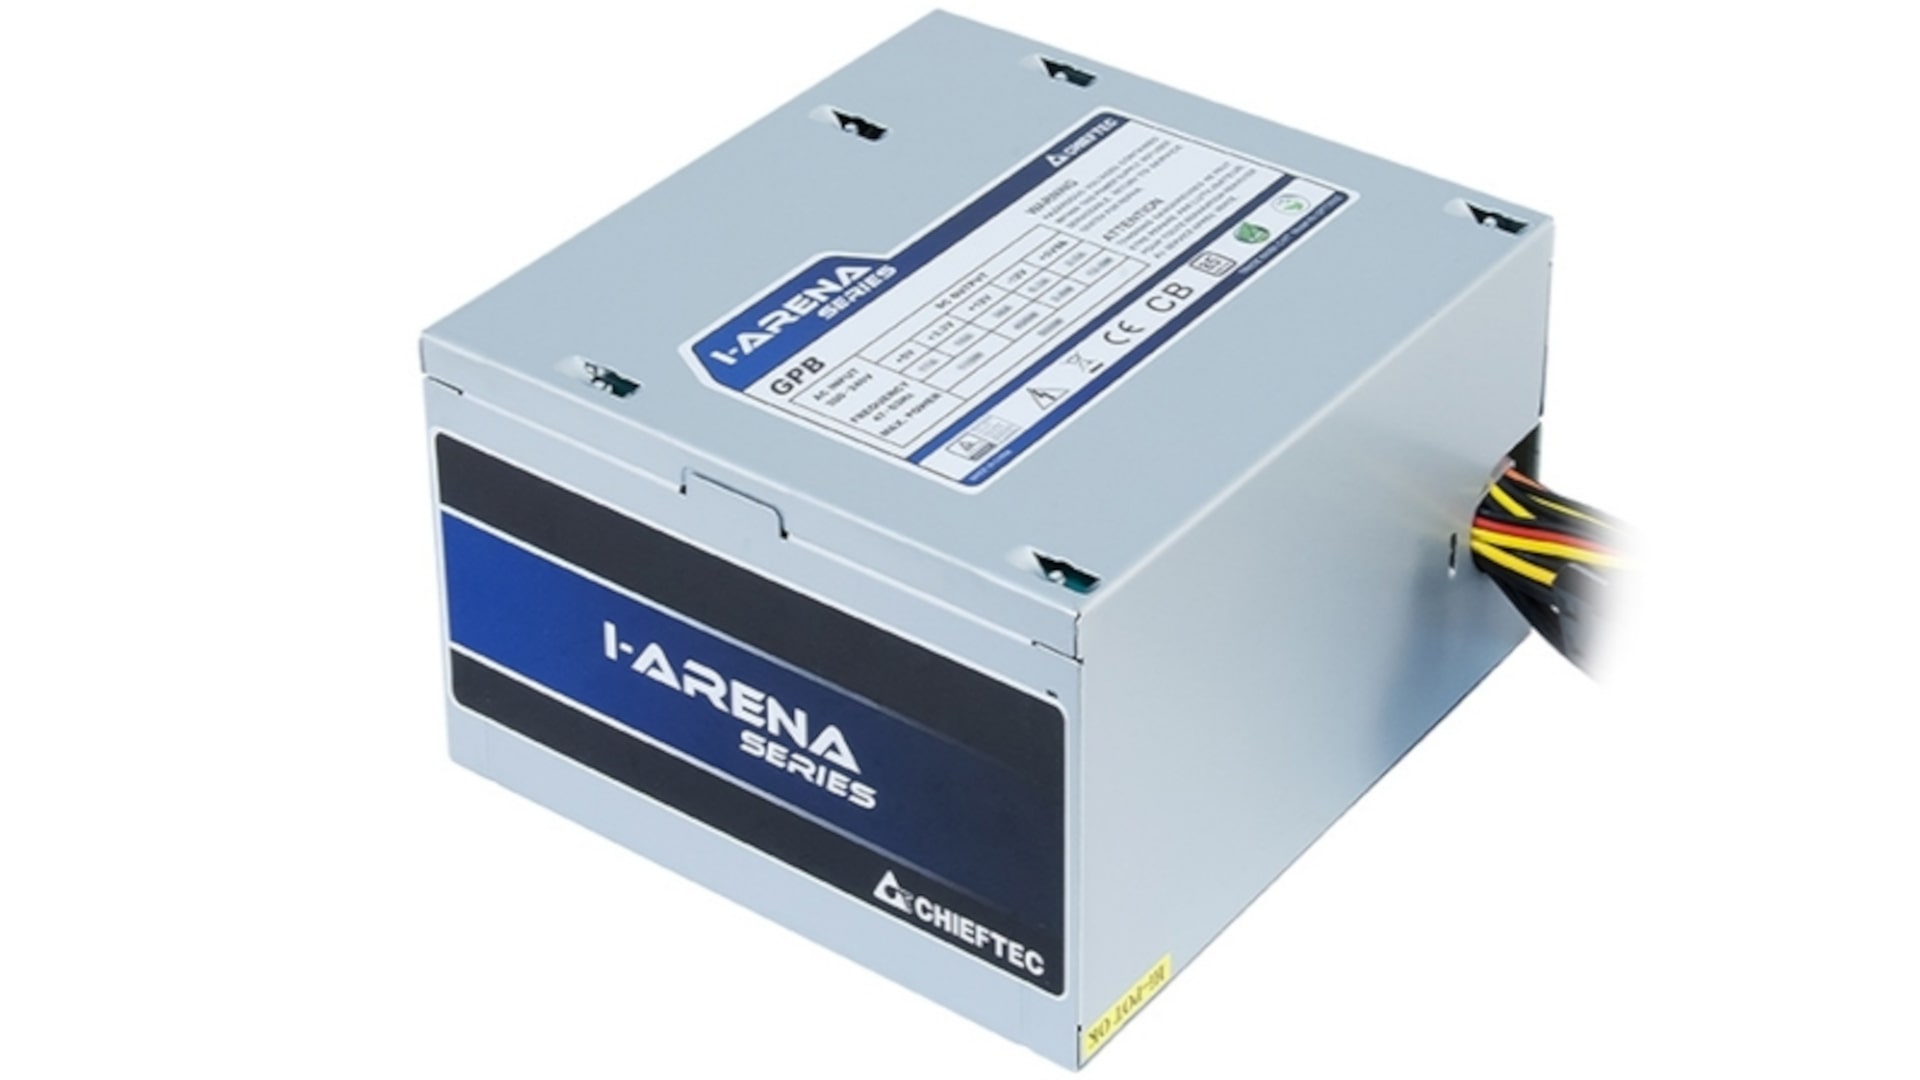 Chieftec iARENA GPB 500S Power Supply 2 1